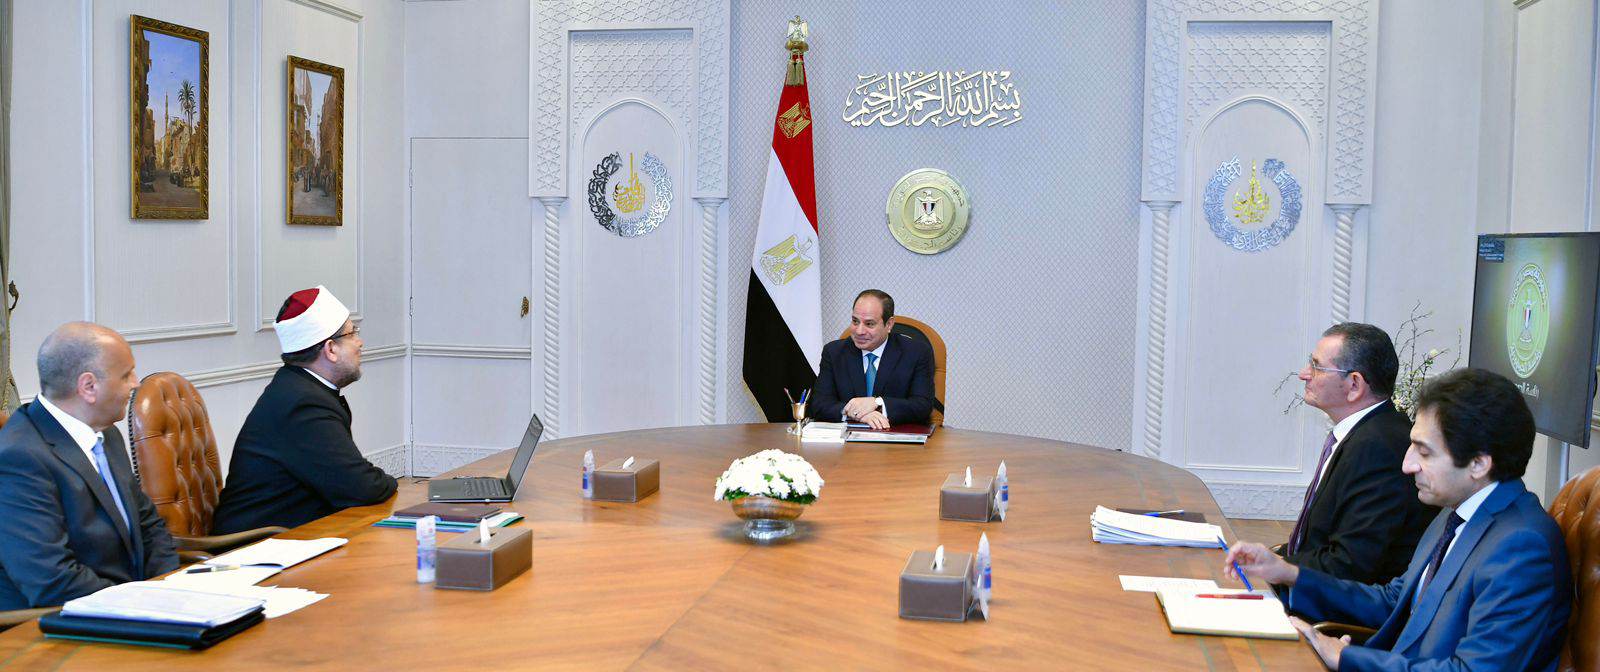 الرئيس عبد الفتاح السيسي يوجه بسرعة تنفيذ الأحكام الصادرة لصالح الأوقاف